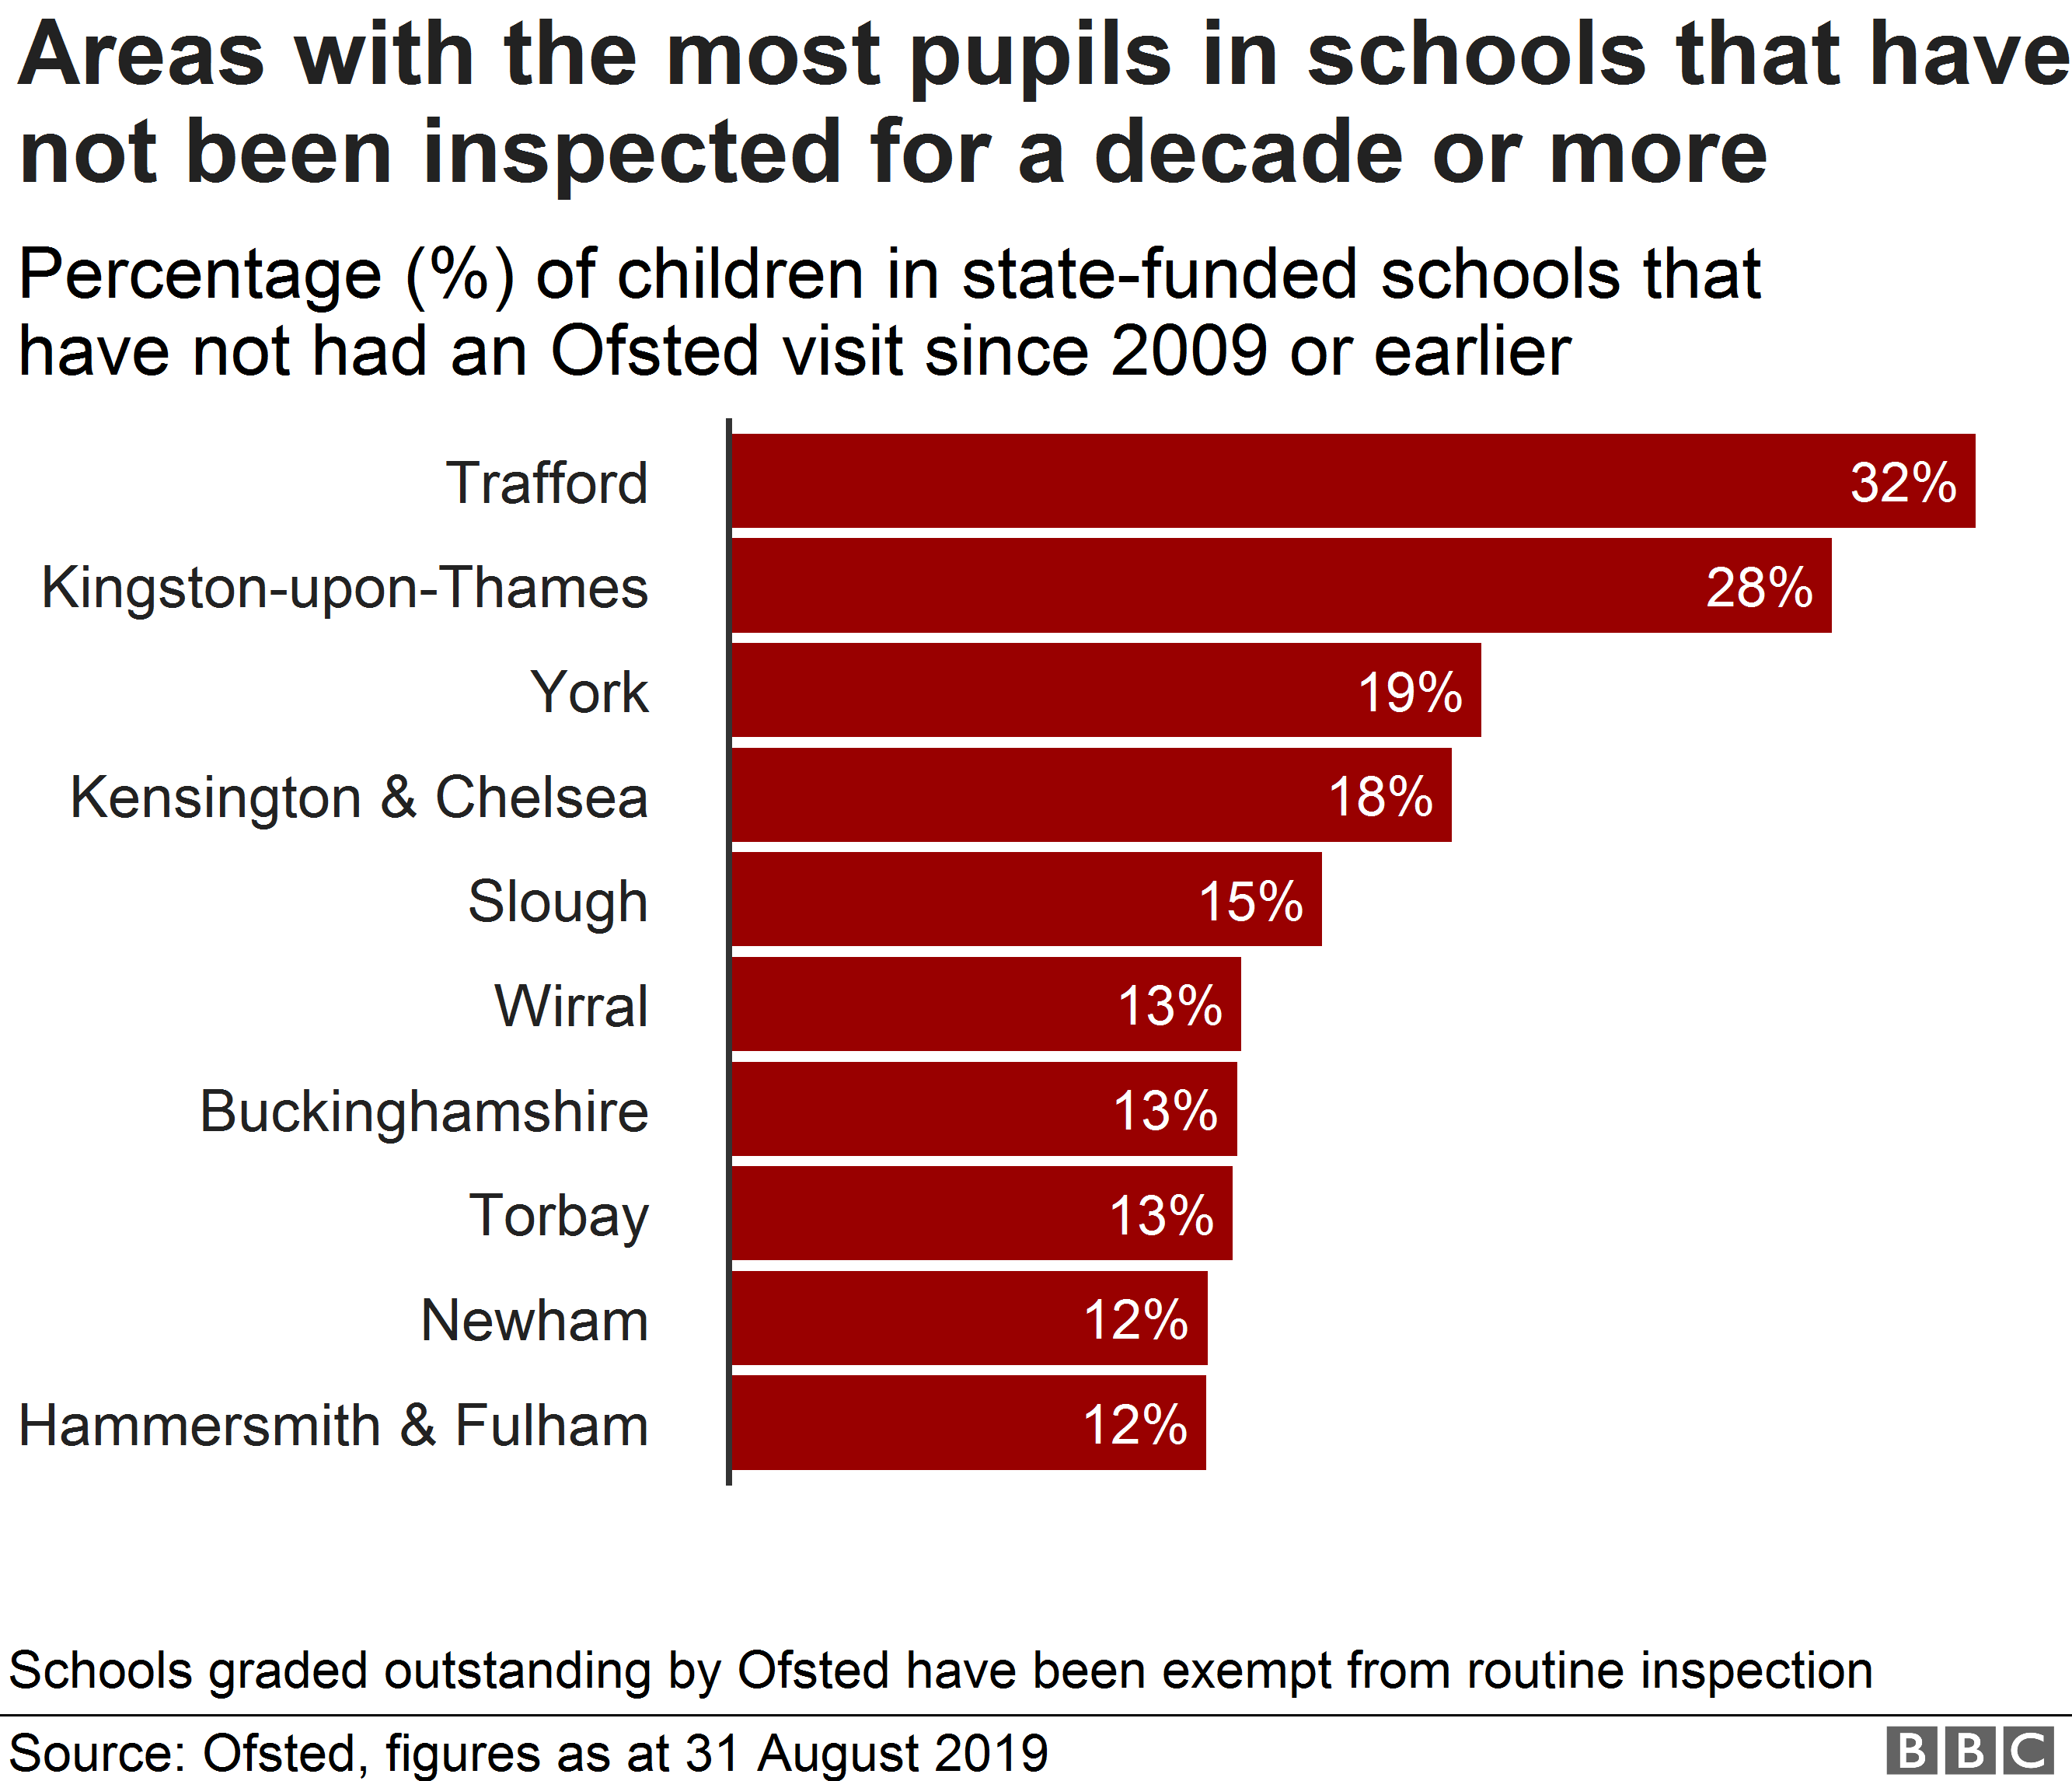 Диаграмма, показывающая районы с наибольшим количеством учеников в школах, которые не проходили инспекцию Ofsted более десяти лет